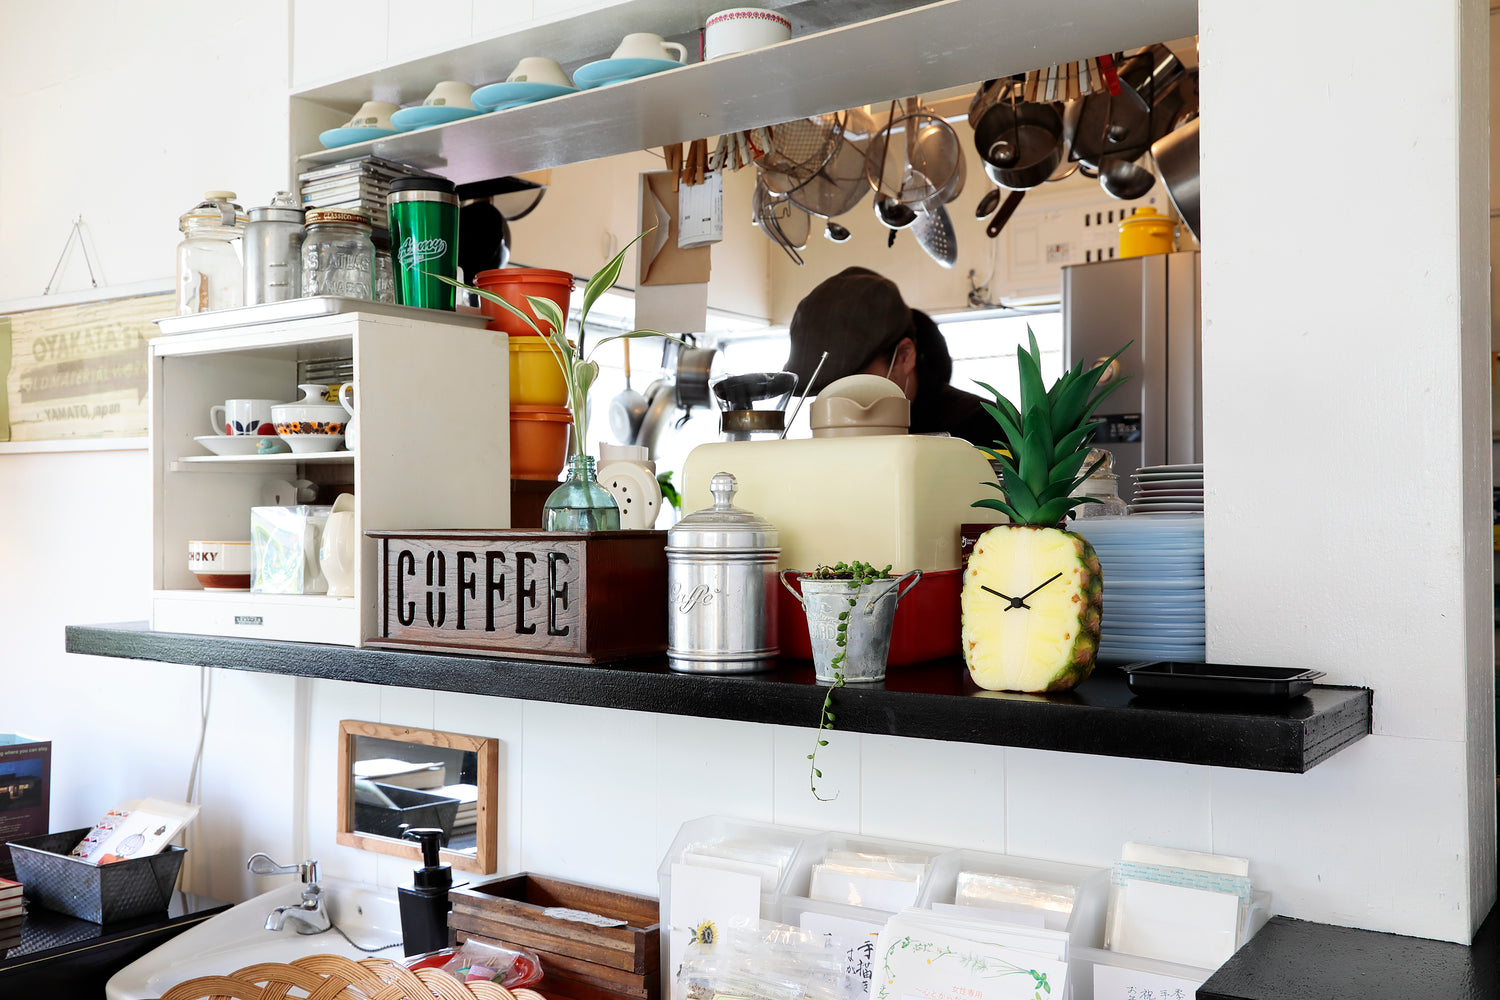 元祖食品サンプル屋「Replica Food Clock パイナップル」のキッチンの横に置いたイメージ画像です